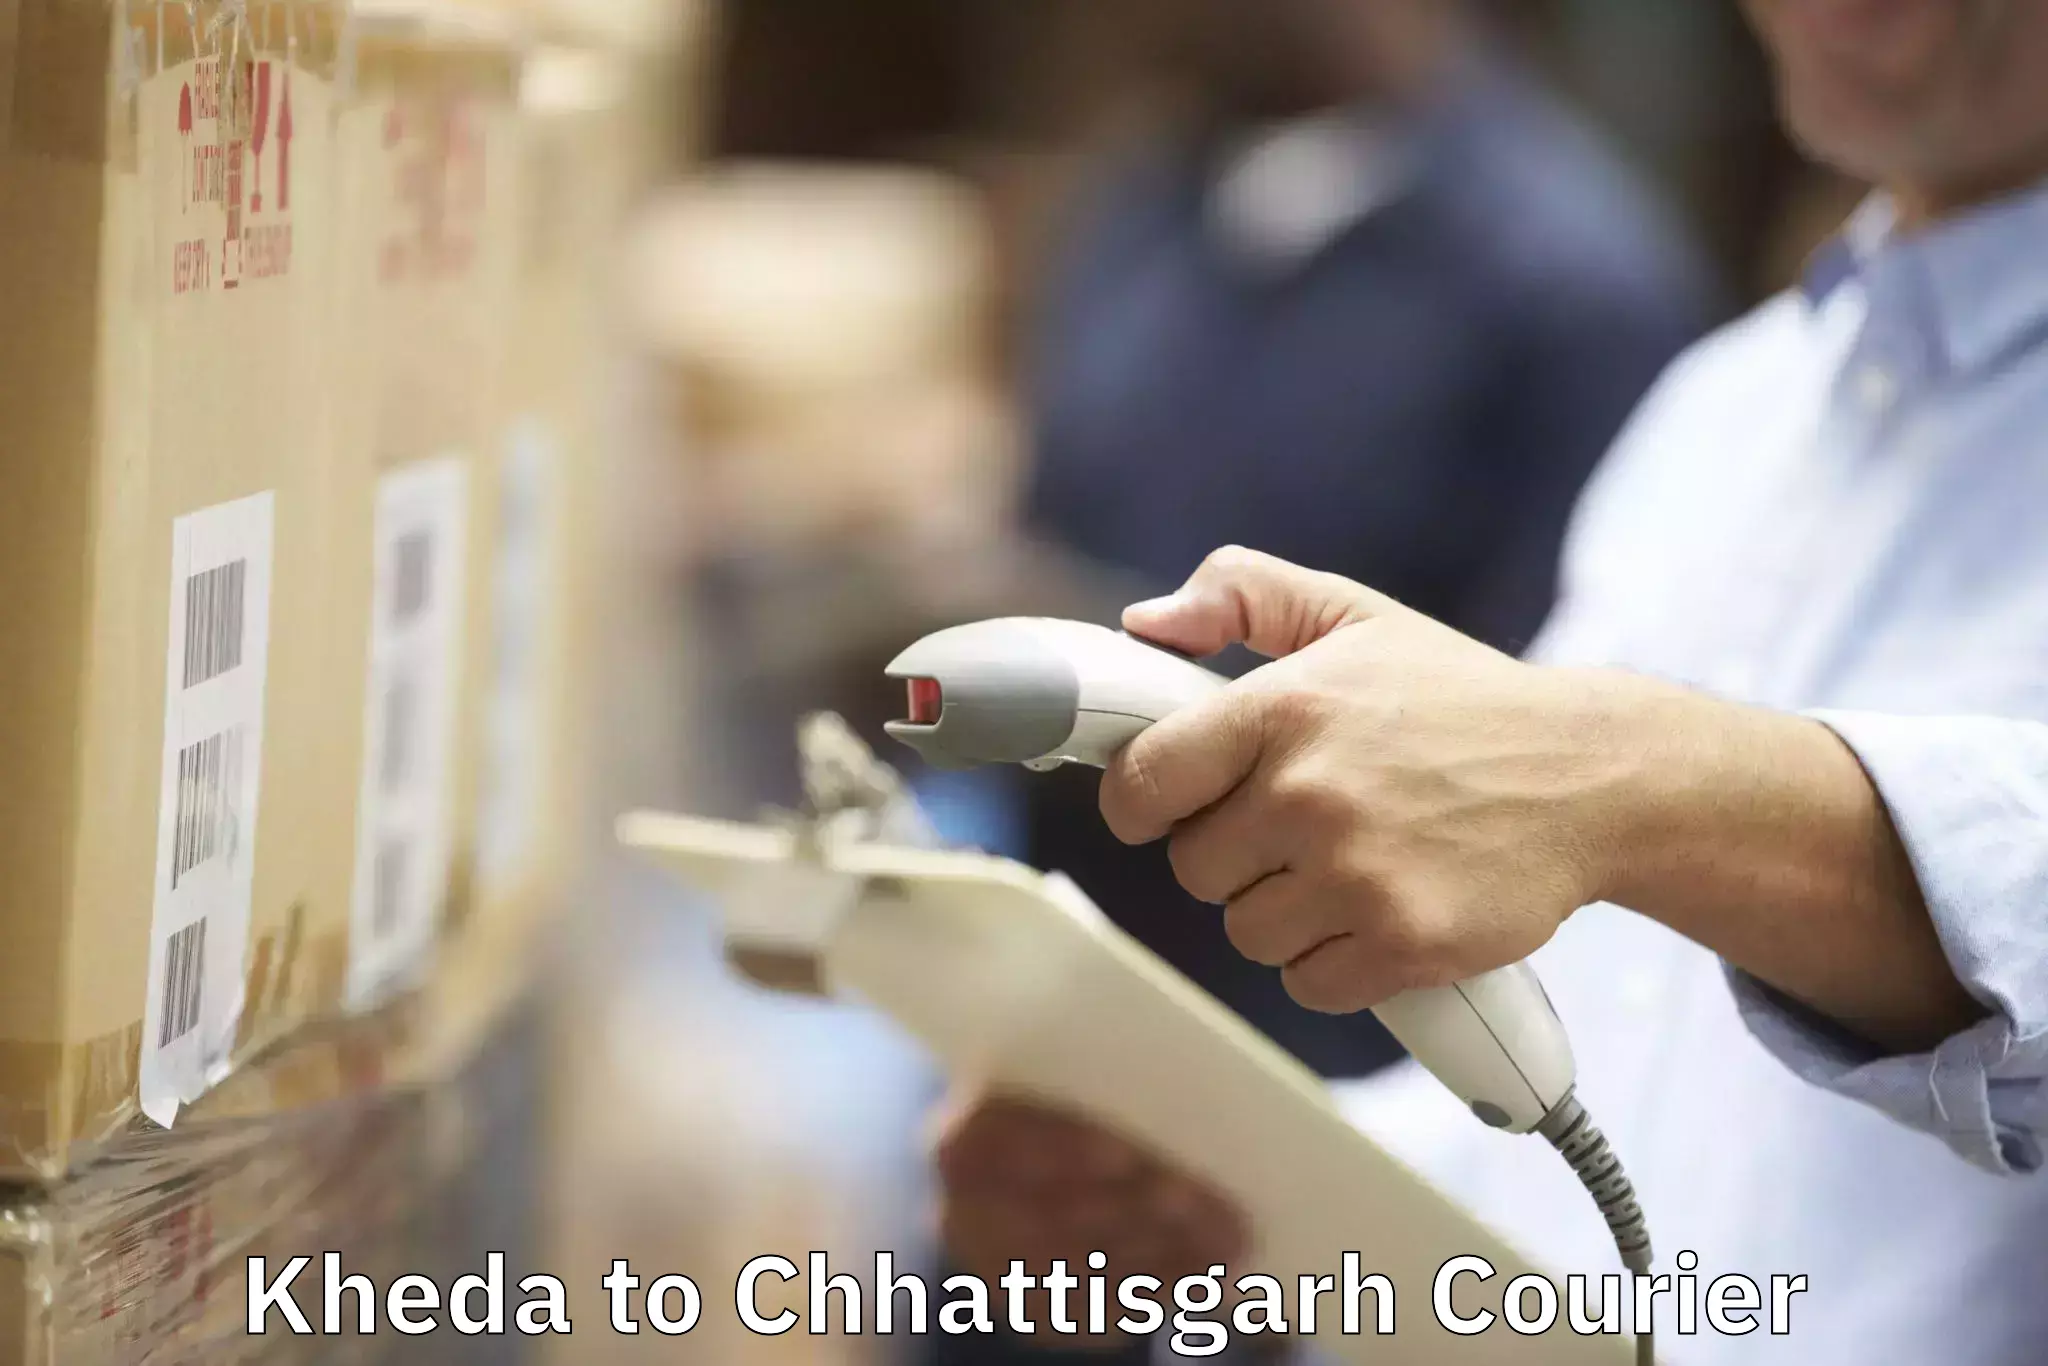 Door-to-door relocation services Kheda to Chhattisgarh